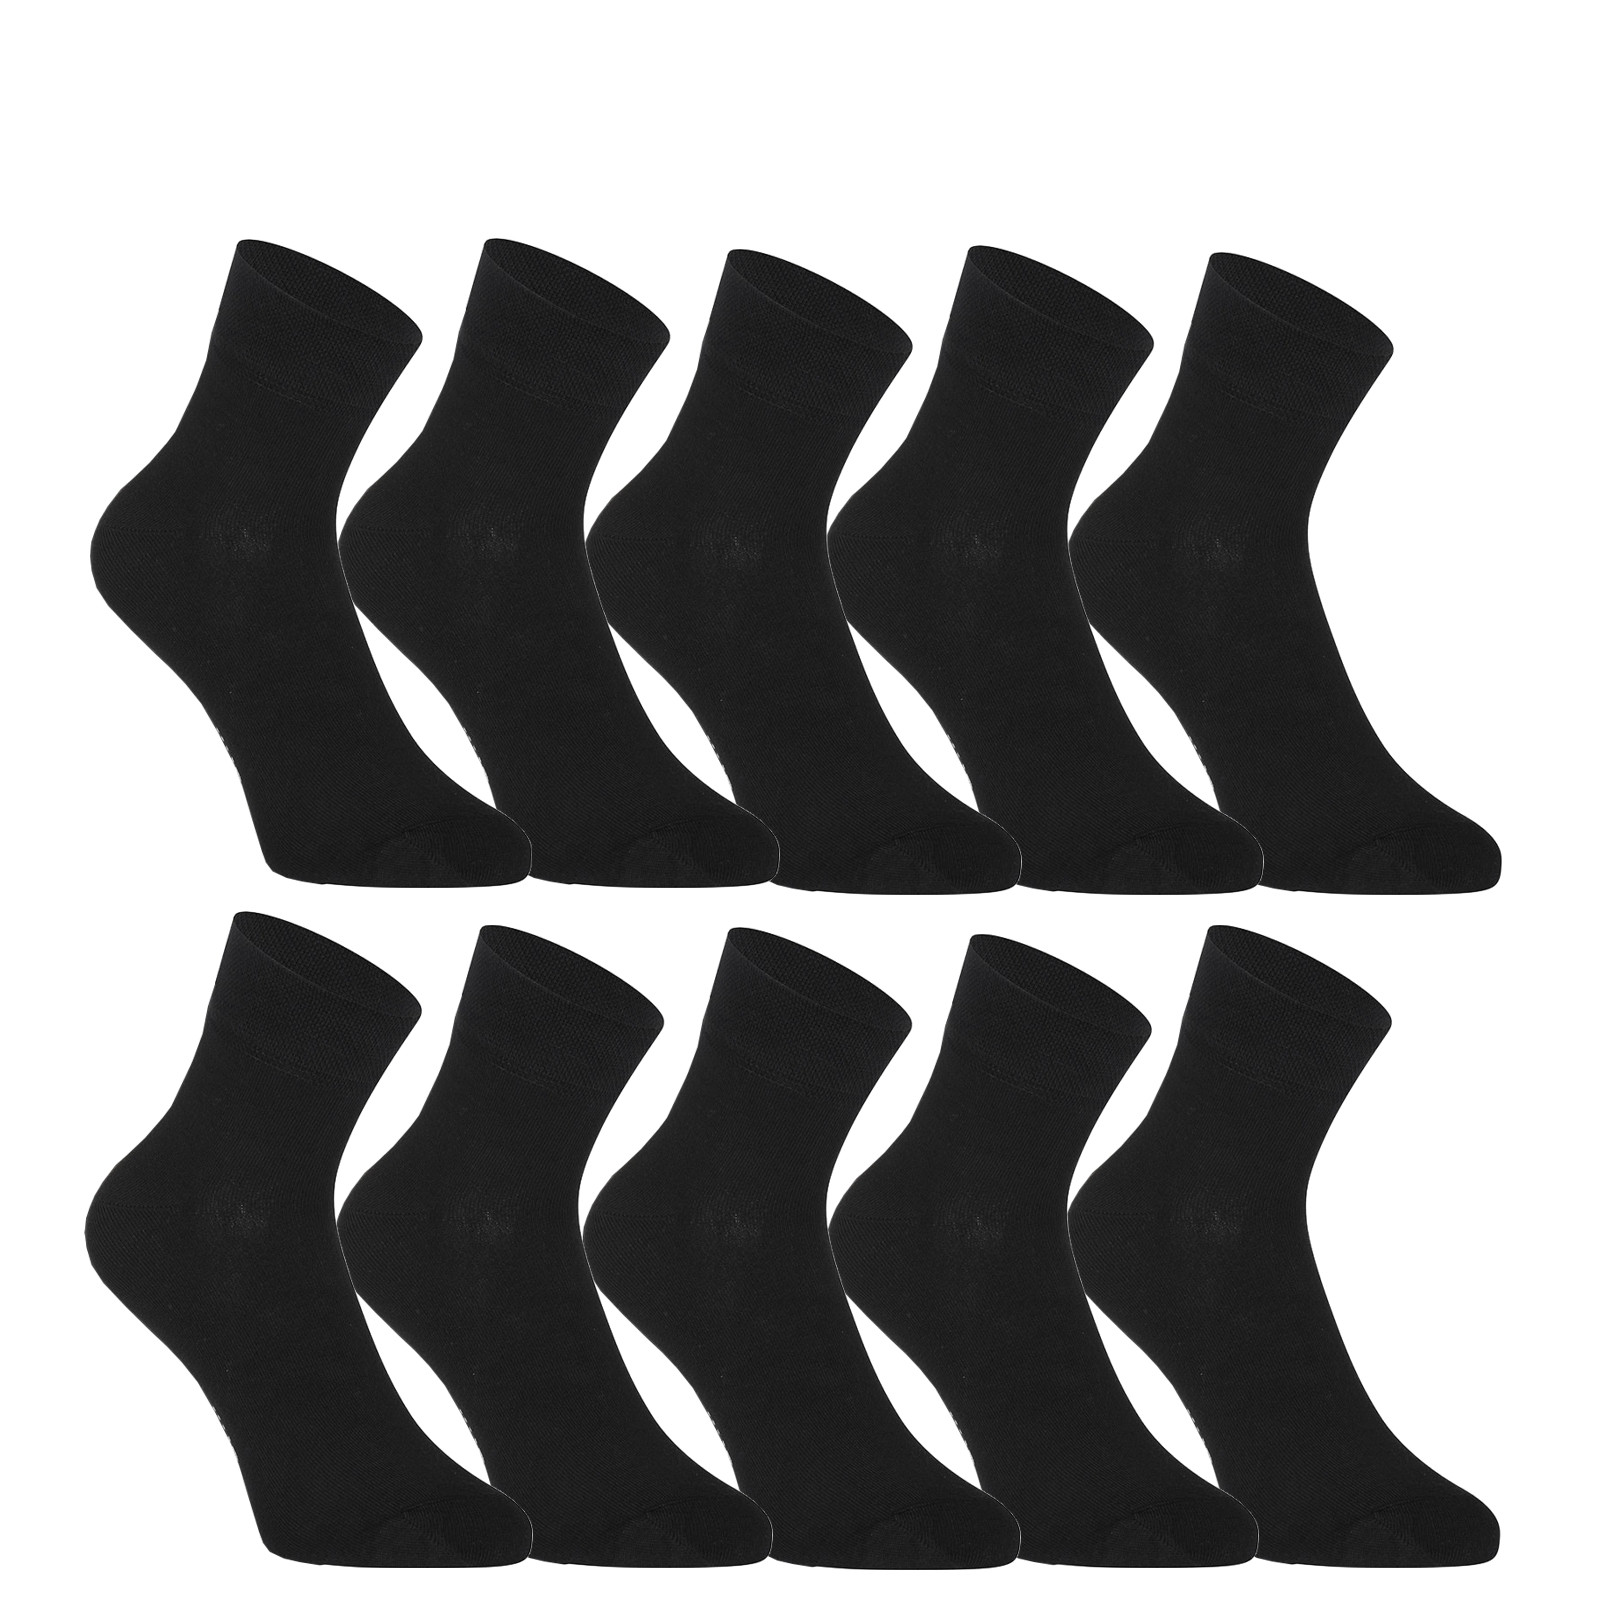 E-shop 10PACK ponožky Styx kotníkové bambusové černé